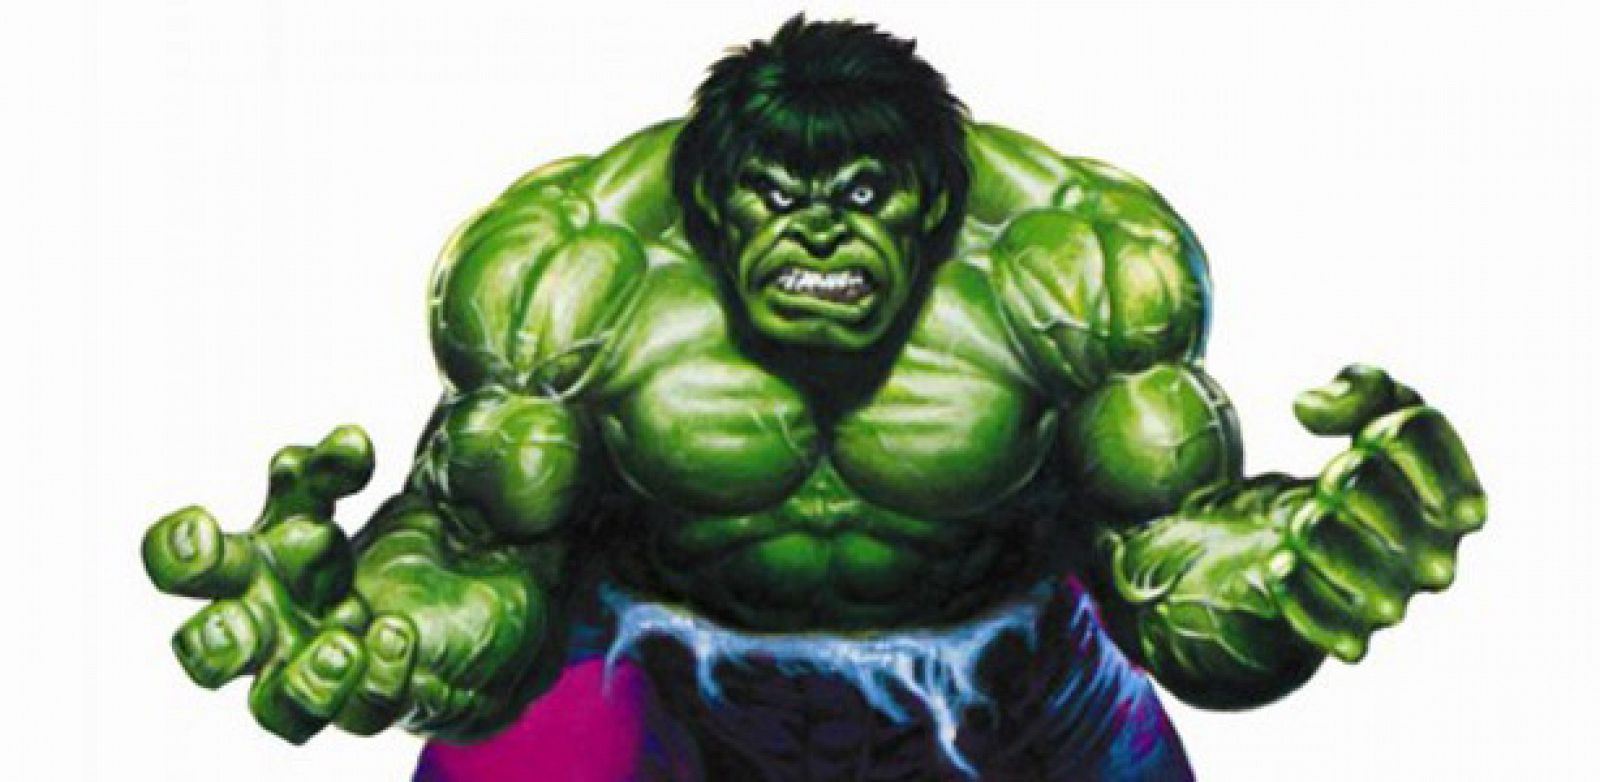 The Rampanging Hulk